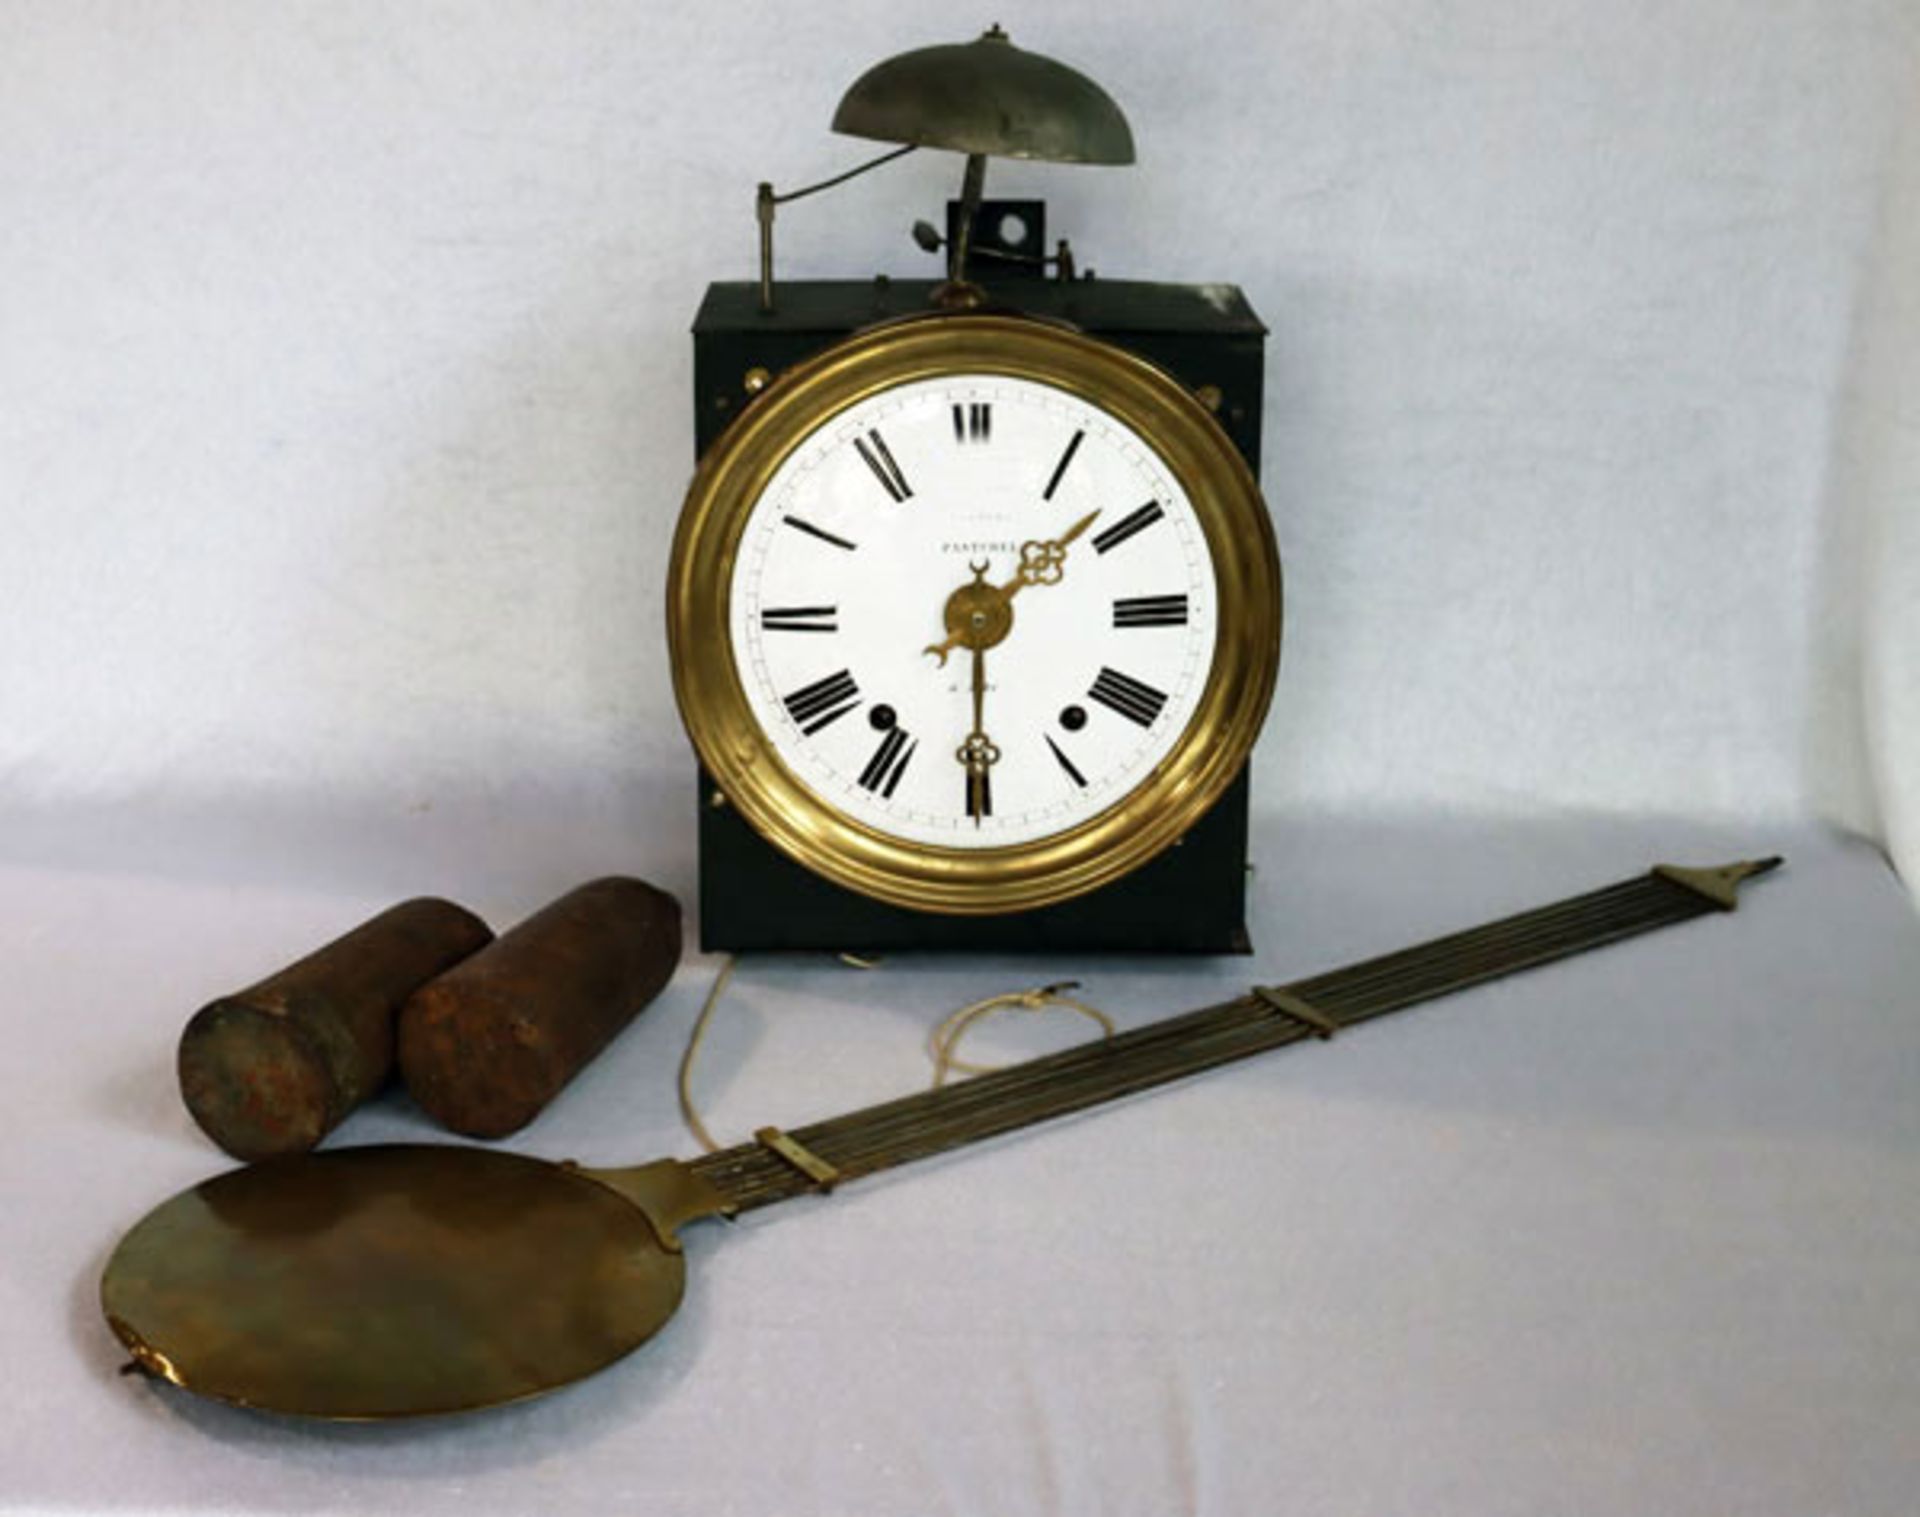 Comtoise Uhr mit Glocke, Pasturel, mit Pendel und 2 Gewichten, Funktion nicht geprüft, H 45 cm